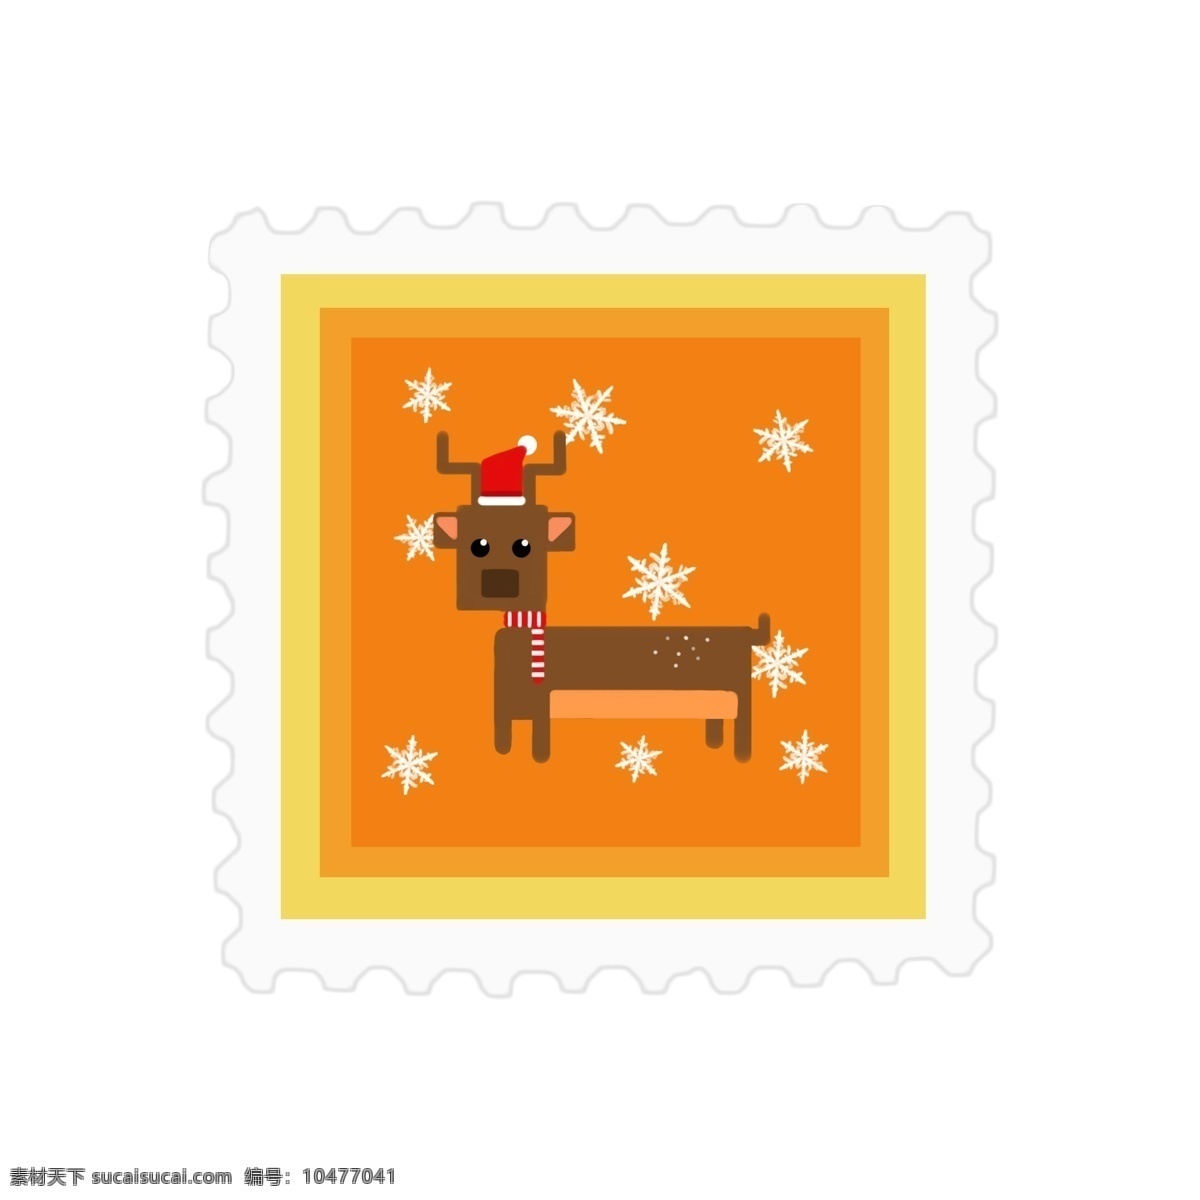 原创 圣诞 邮票 贴纸 黄色 可爱 元素 动物 圣诞节 雪花 麋鹿 方形 动物邮票 像素风